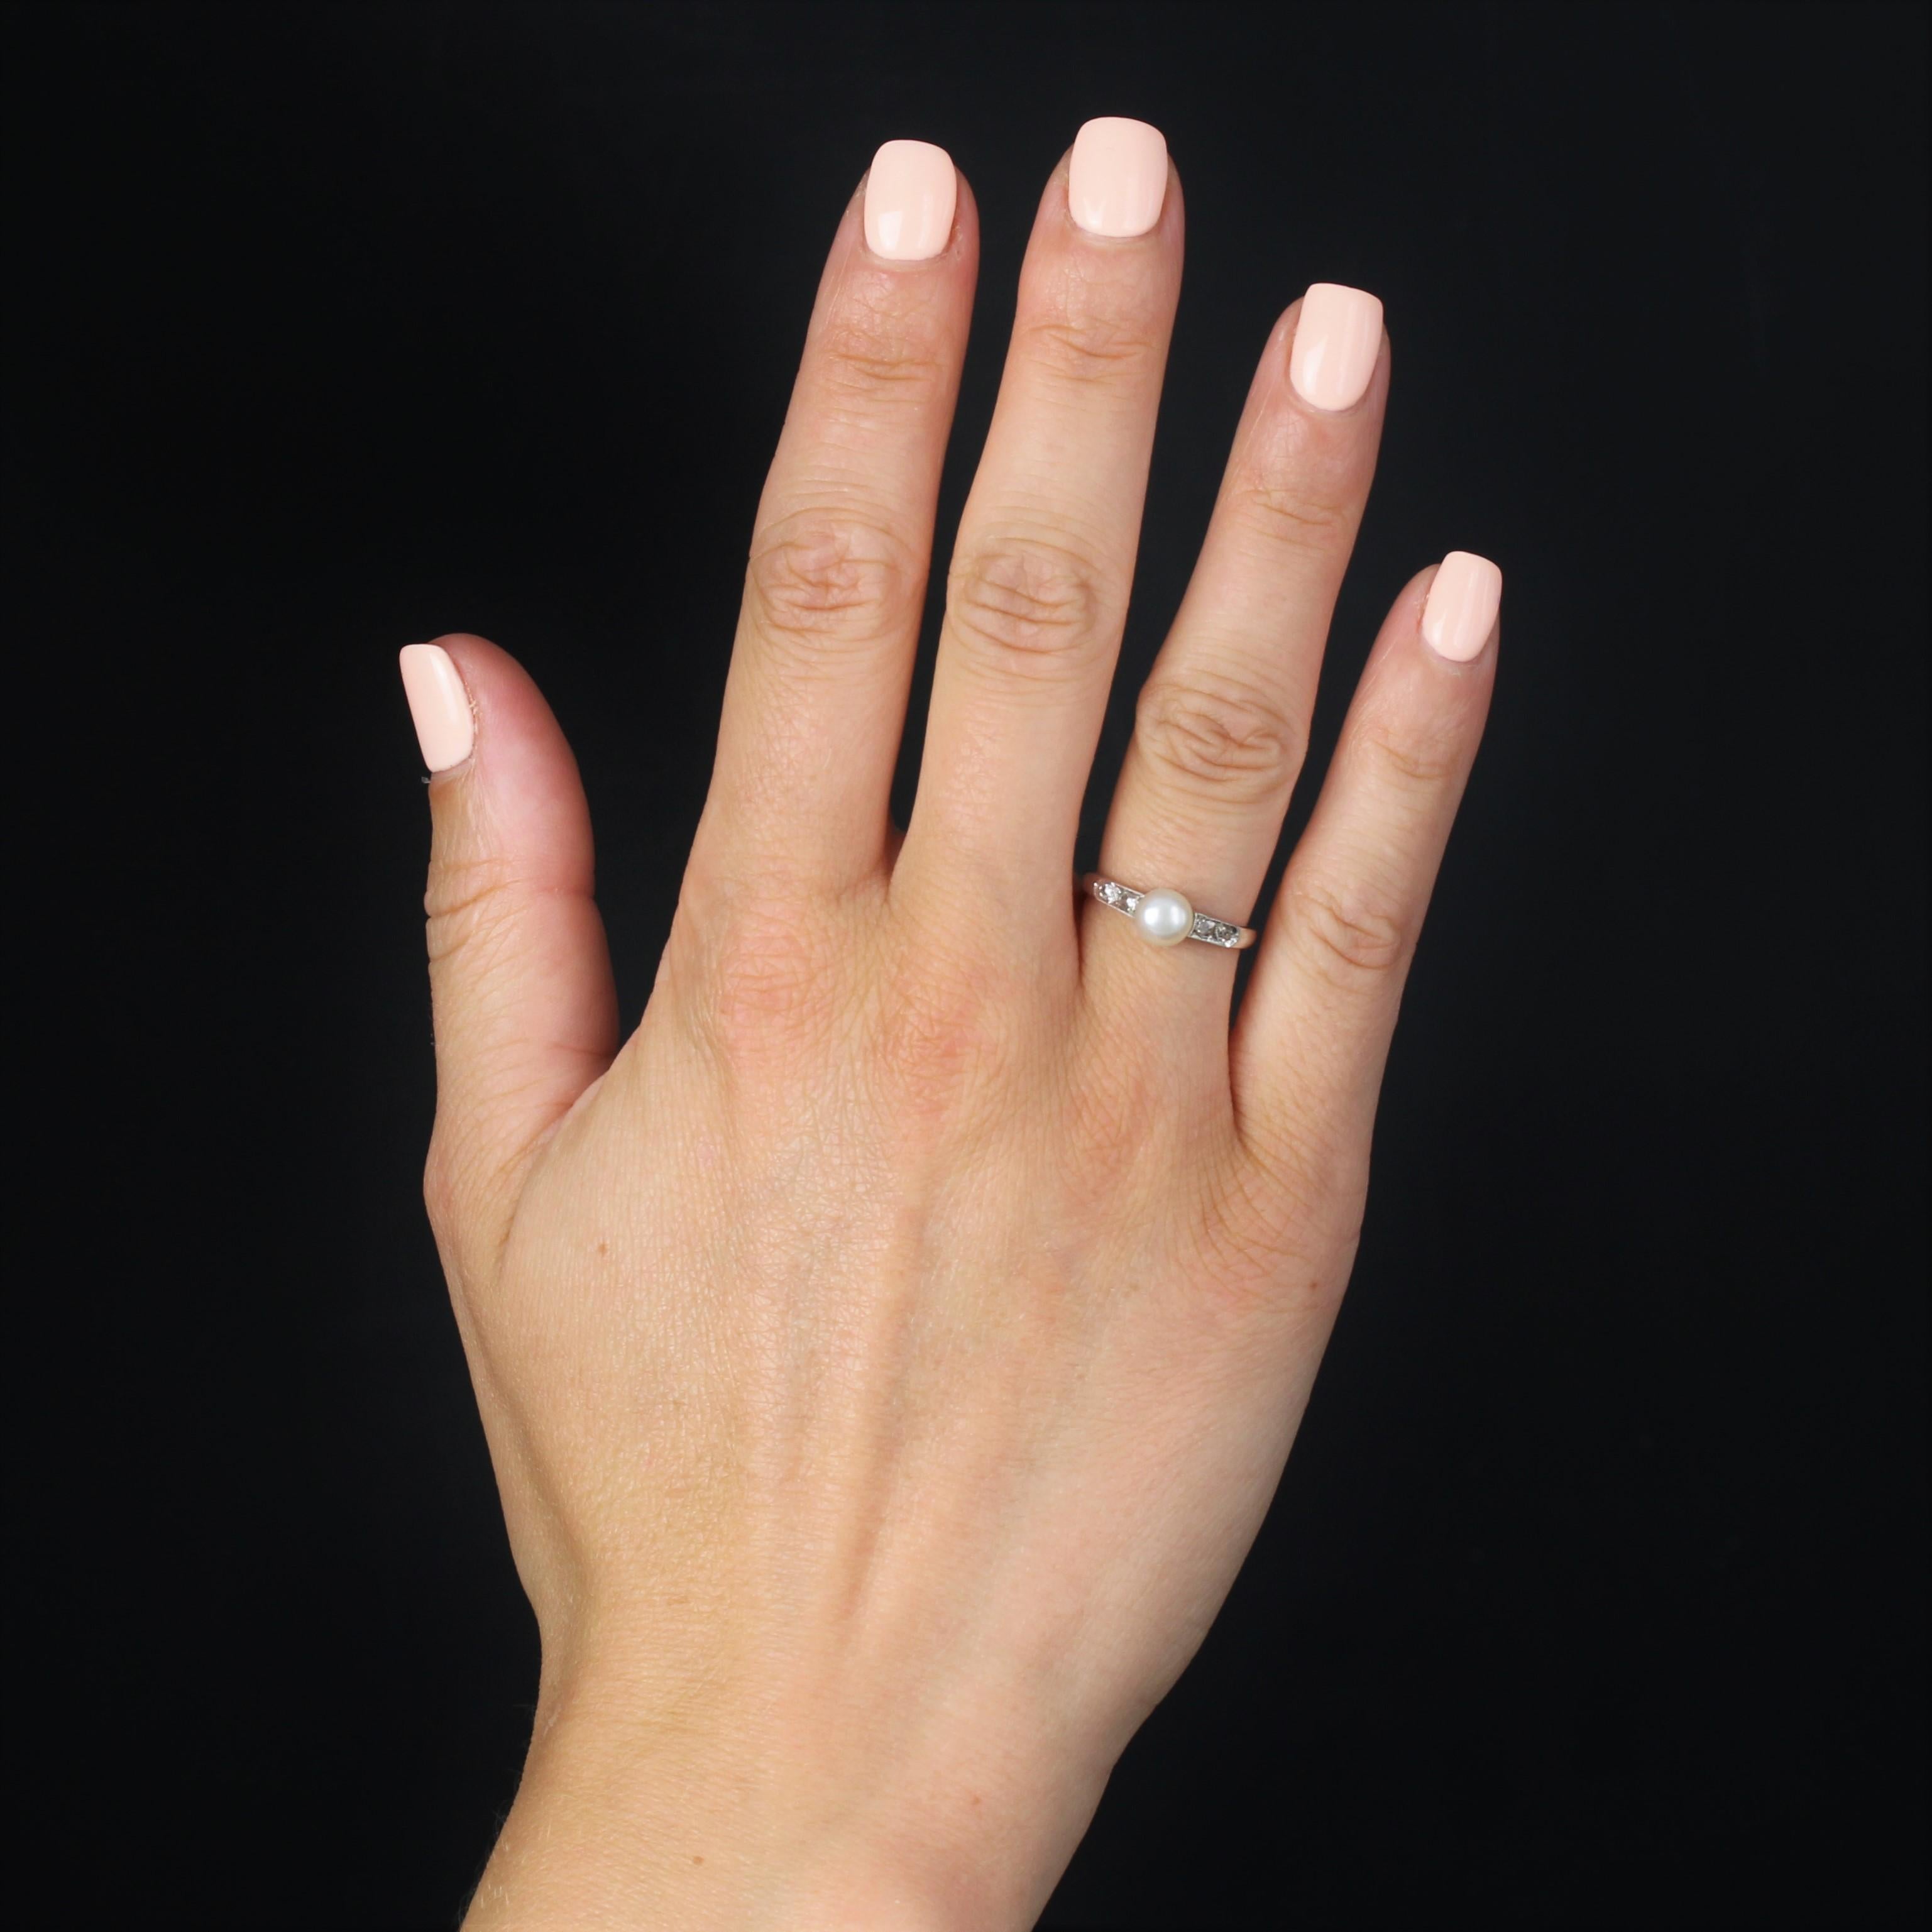 Ring aus 18 Karat Weißgold, Adlerkopfpunze.
Ein entzückender antiker Ring mit einer cremeweißen Perlenknopf-Zuchtperle an der Spitze, flankiert von 2 x 2 Diamanten im Rosenschliff an beiden Seiten.
Durchmesser der Perle: ca. 5,5/6 mm.
Dicke: ca. 6,3